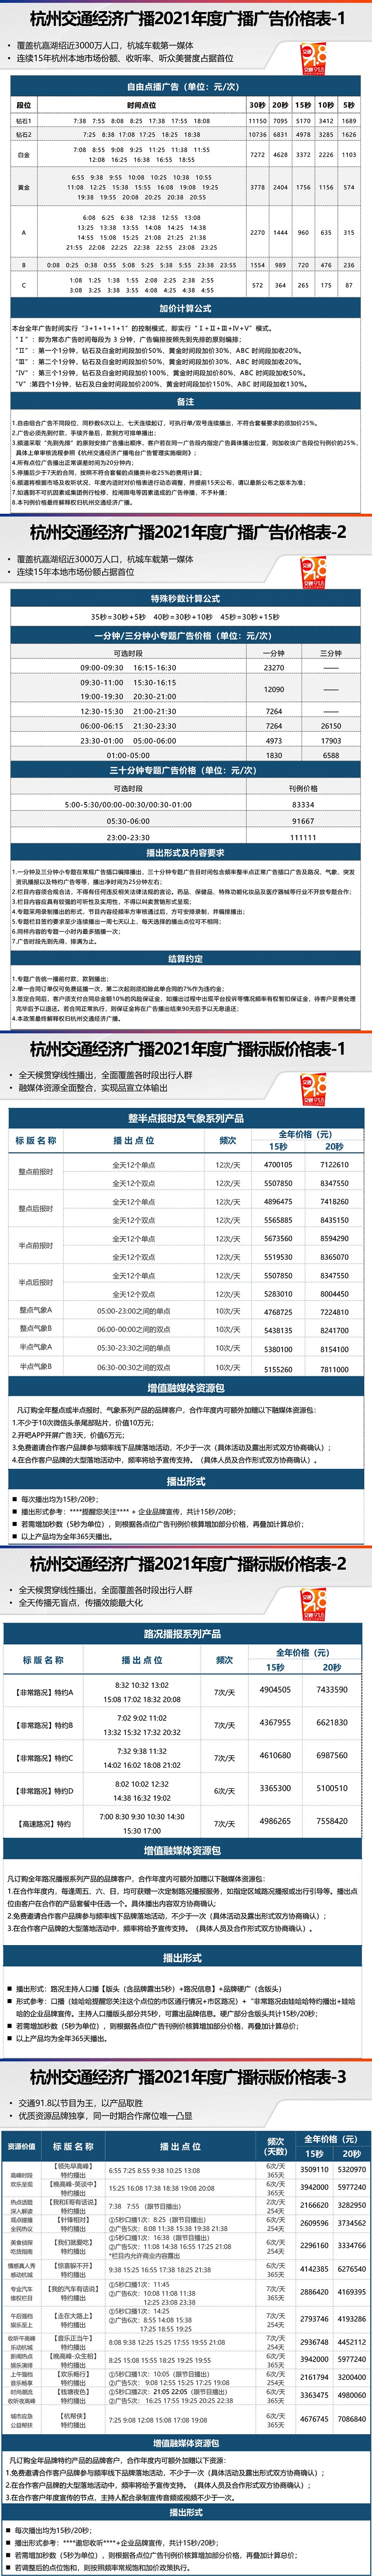 2021杭州人民广播电台交通经济广播 FM91.8广告报价表.jpg